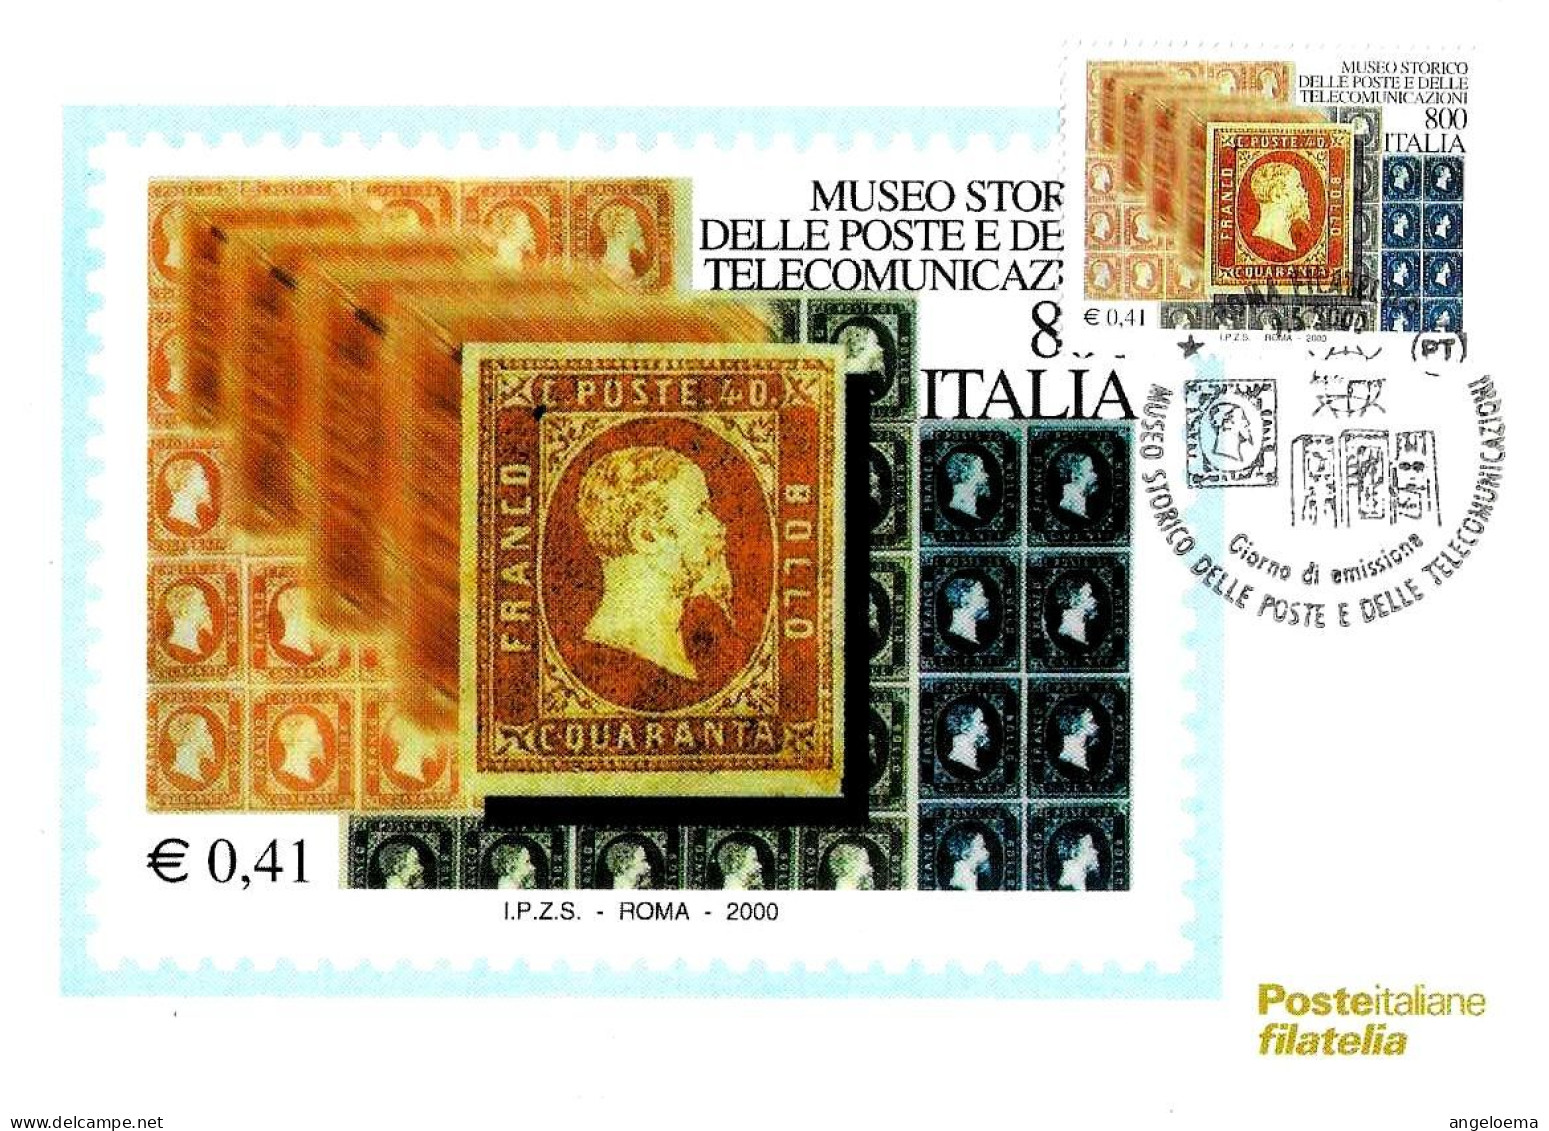 ITALIA ITALY - 2000 ROMA Museo Poste E Telecomunicazioni Francobolli Regno Di Sardegna Annullo Fdc Su Cartolina PT - 770 - Esposizioni Filateliche